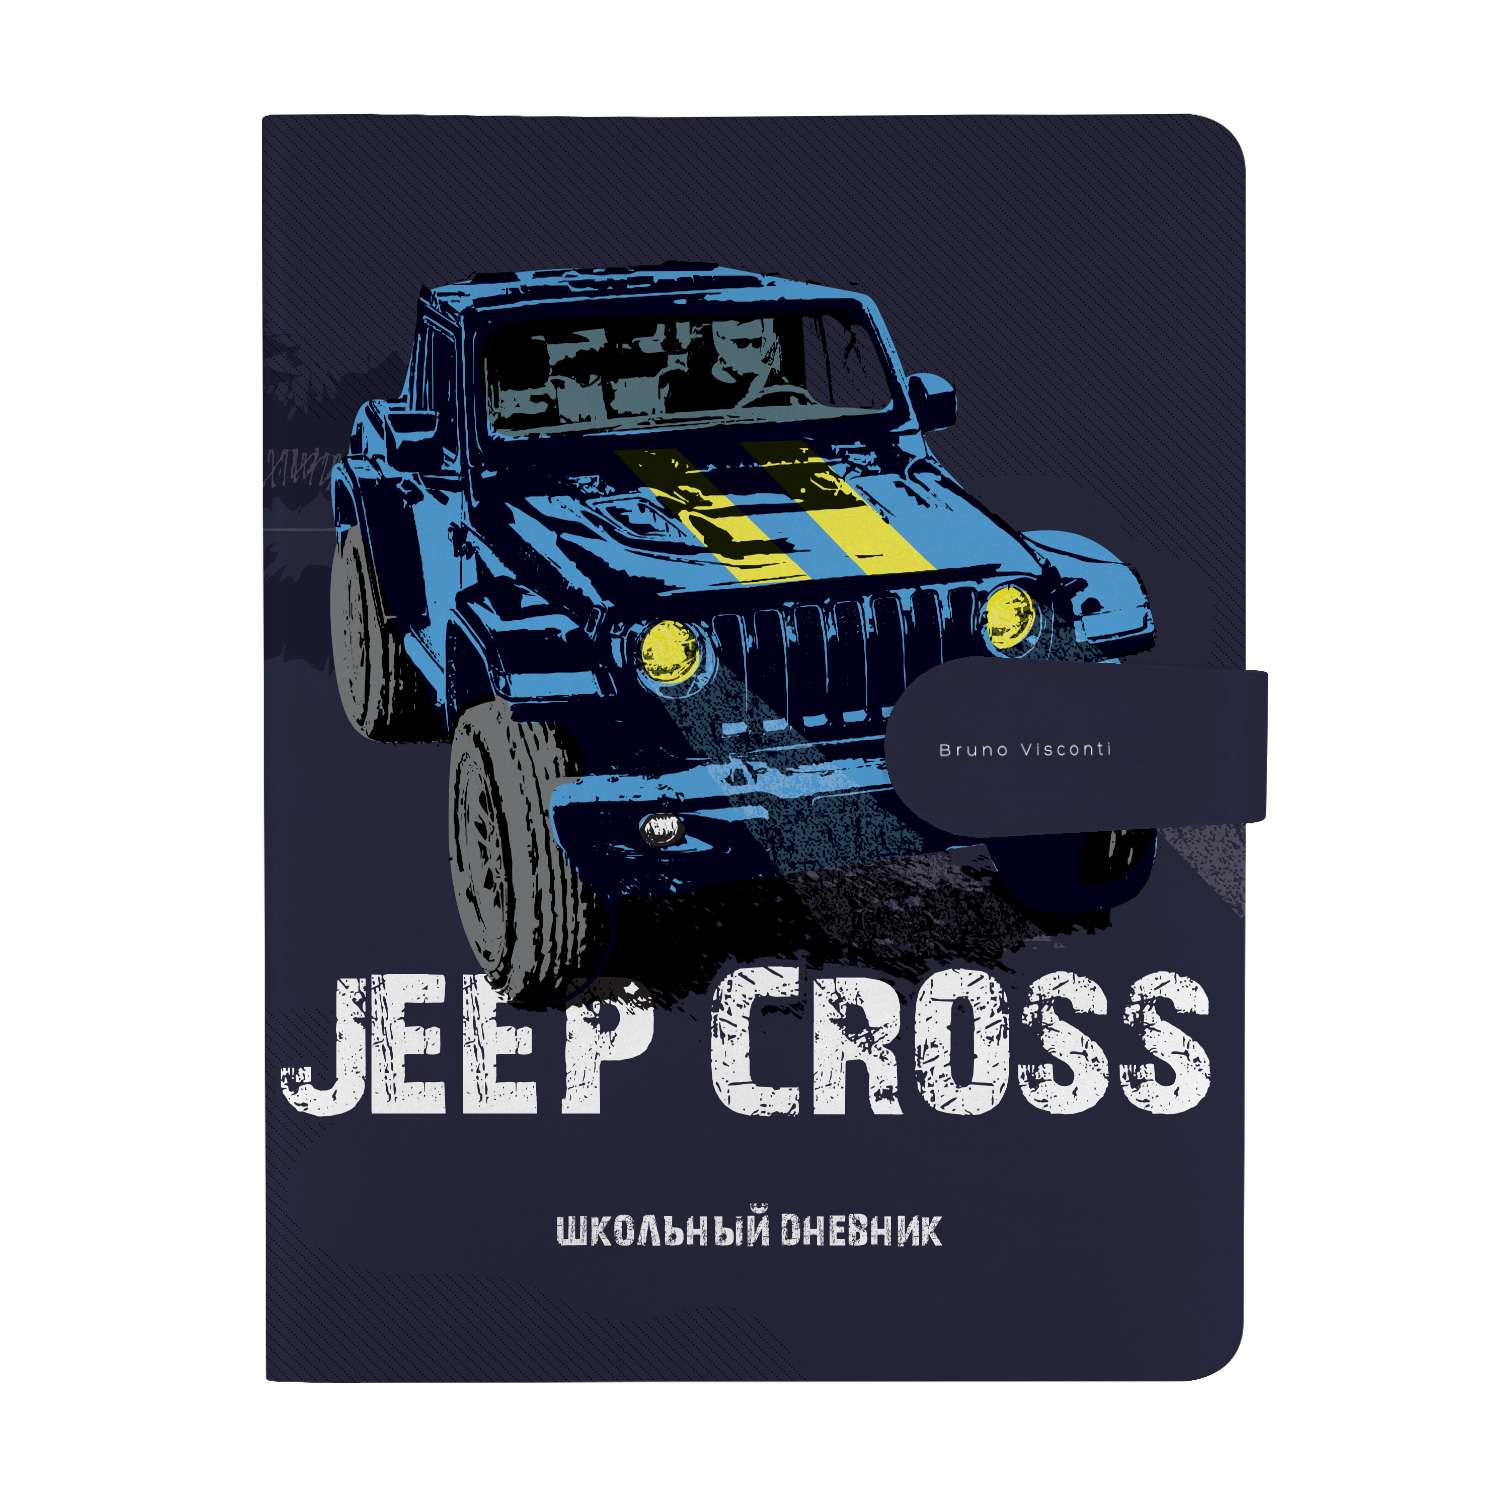 Дневник школьный Bruno Visconti Jeep Cross с магнитным хлястиком 48 листов А5 - фото 1